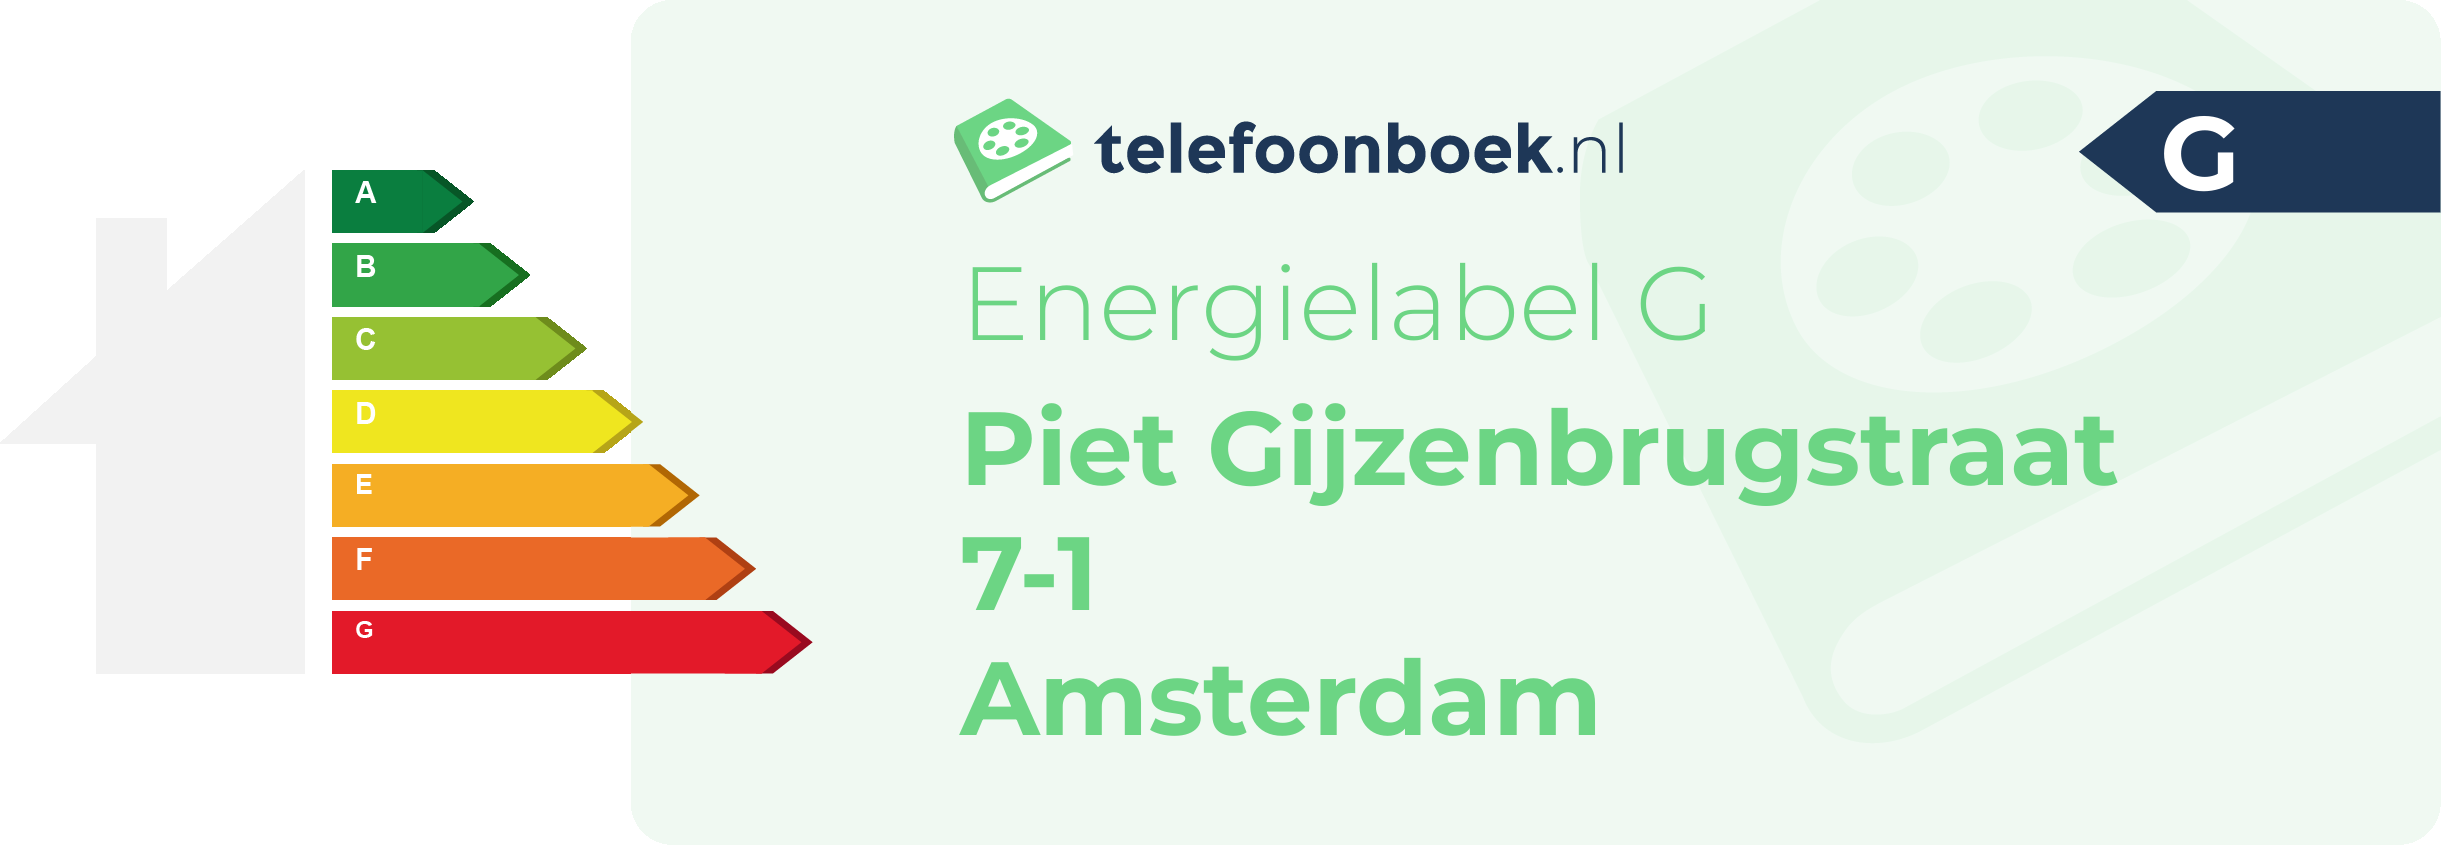 Energielabel Piet Gijzenbrugstraat 7-1 Amsterdam